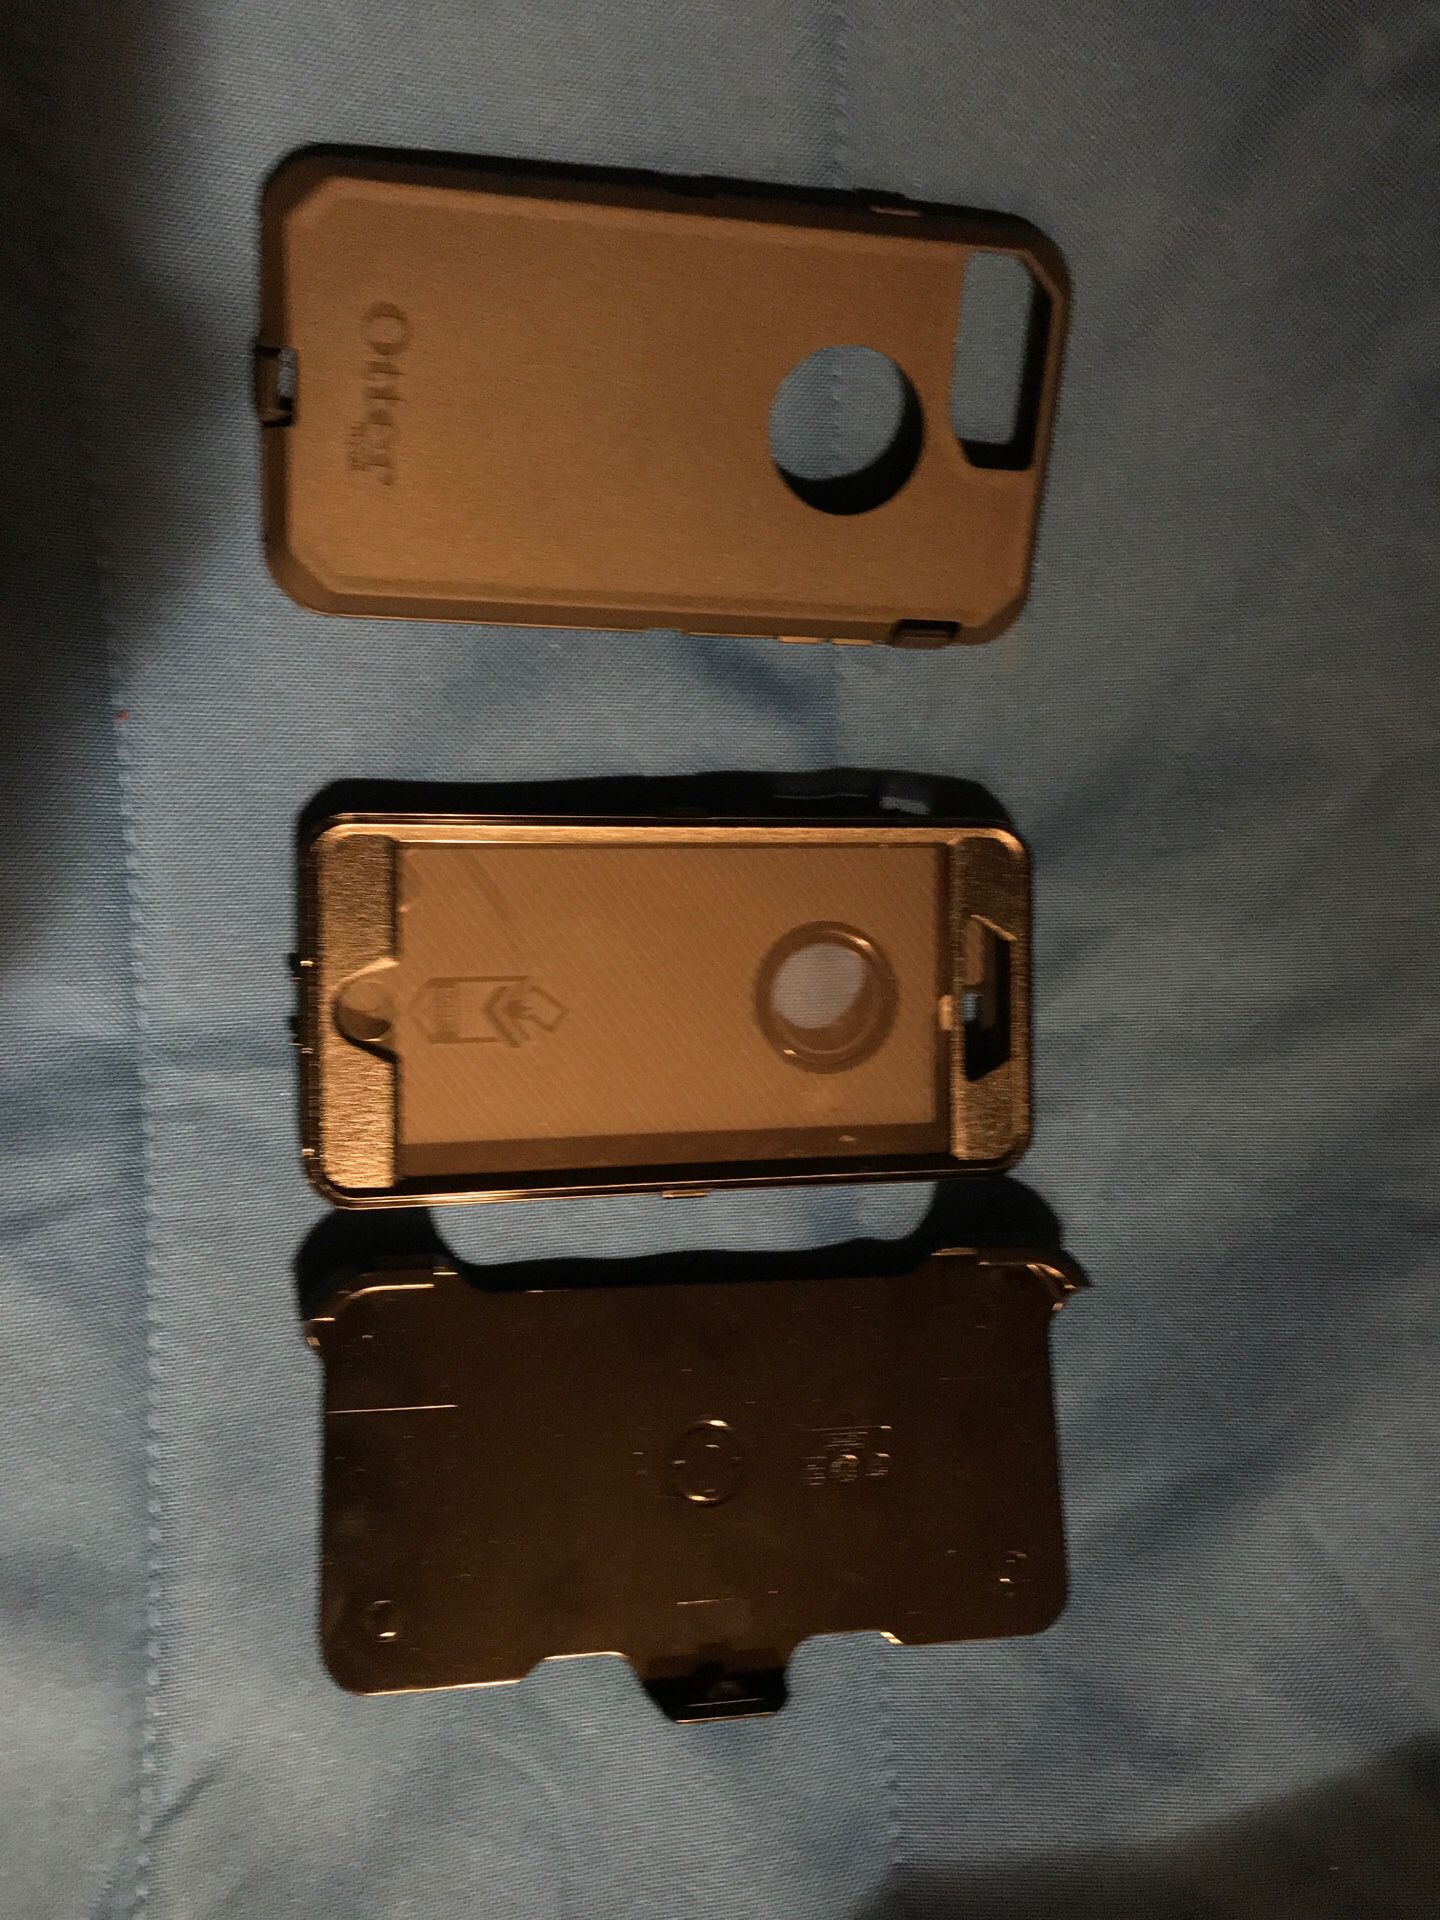 iPhone 7 Plus Defender Otterbox case